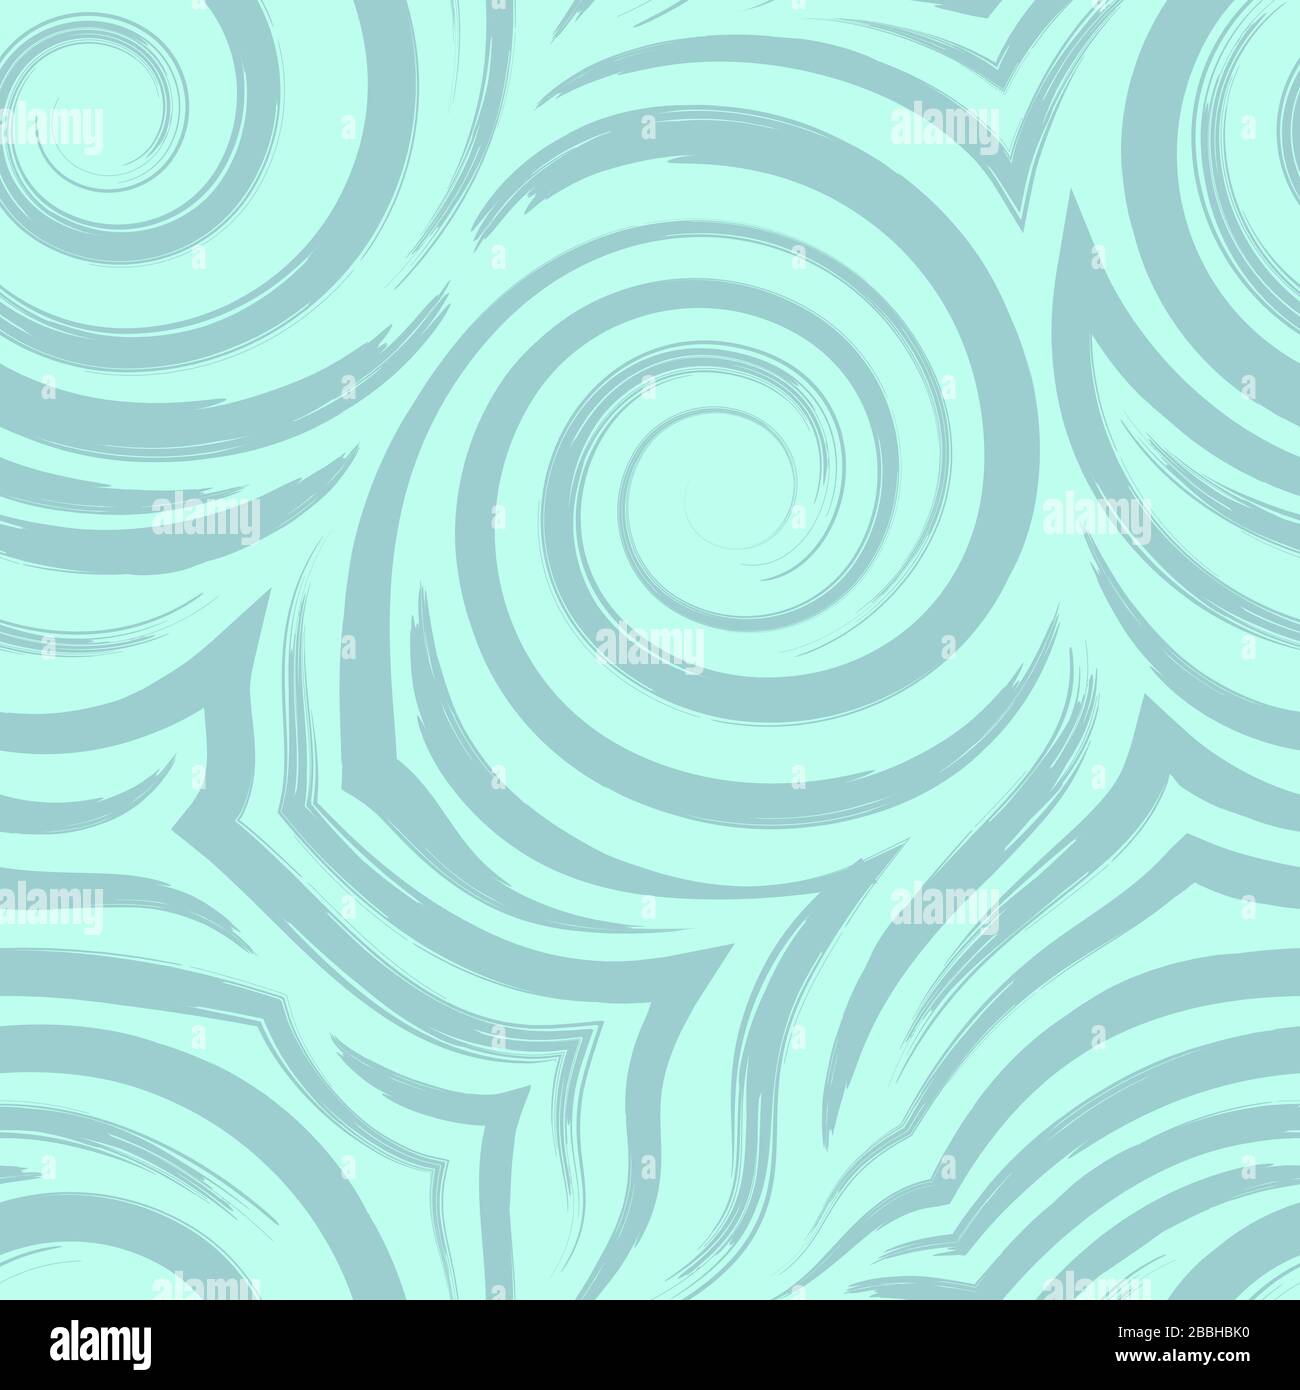 Vectorisation de spirales et de boucles transparentes. Texture turquoise abstraite pour tissus ou papier d'emballage. Texture géométrique des lignes de flux et des arcs Illustration de Vecteur